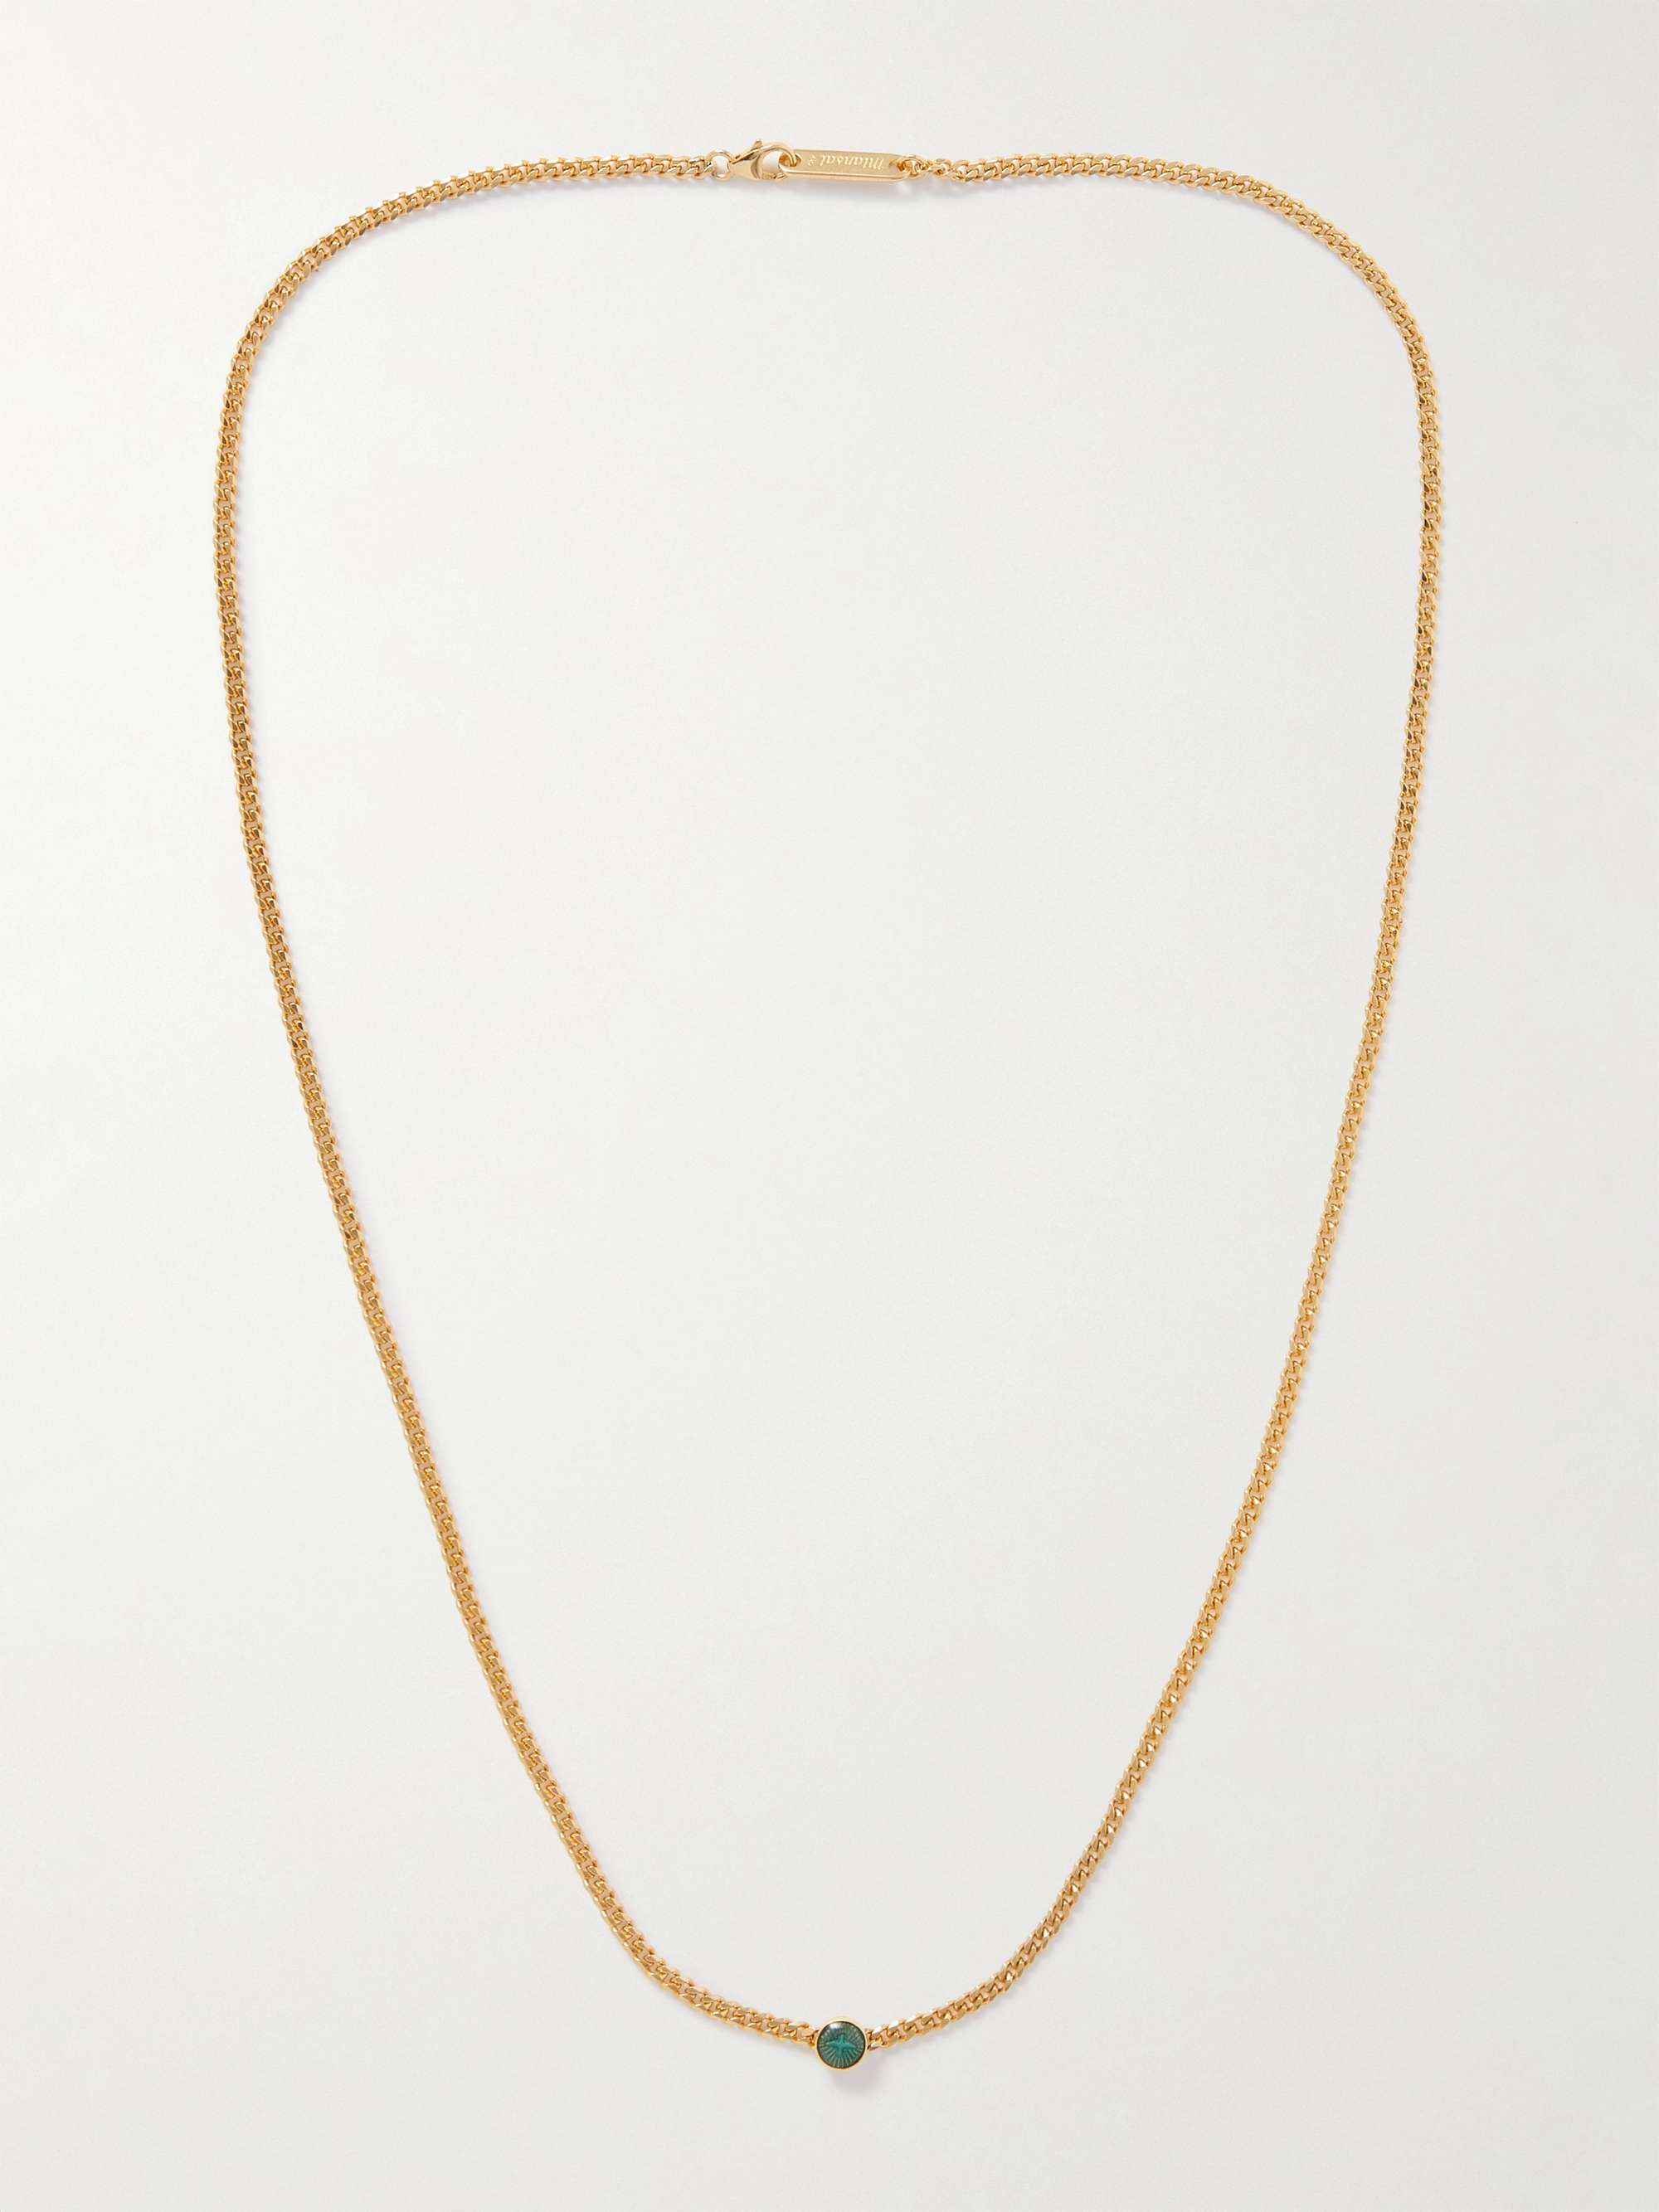 MIANSAI Dove Type Gold Vermeil and Enamel Pendant Necklace